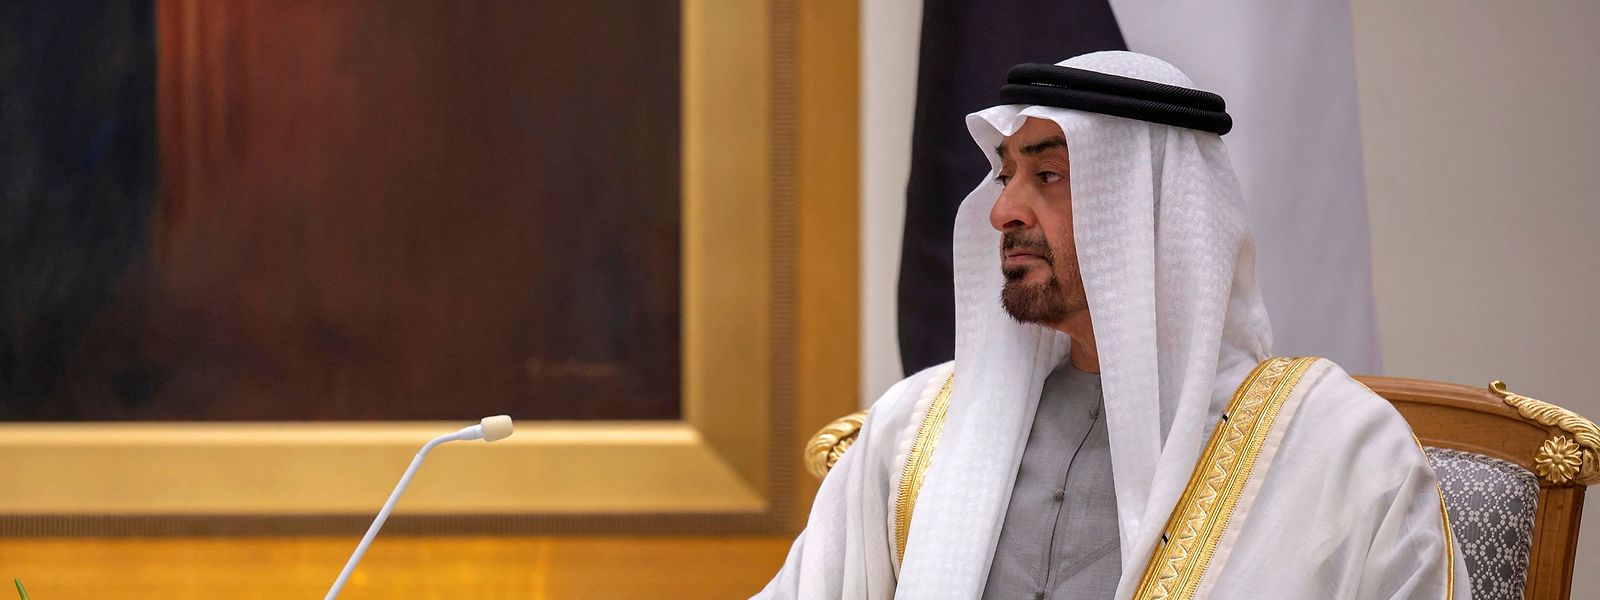 Der bisherige Kronprinz von Abu Dhabi, Mohammed bin Sajid, tritt die Nachfolge seines am Freitag gestorbenen Halbbruders Chalifa bin Sajid an.